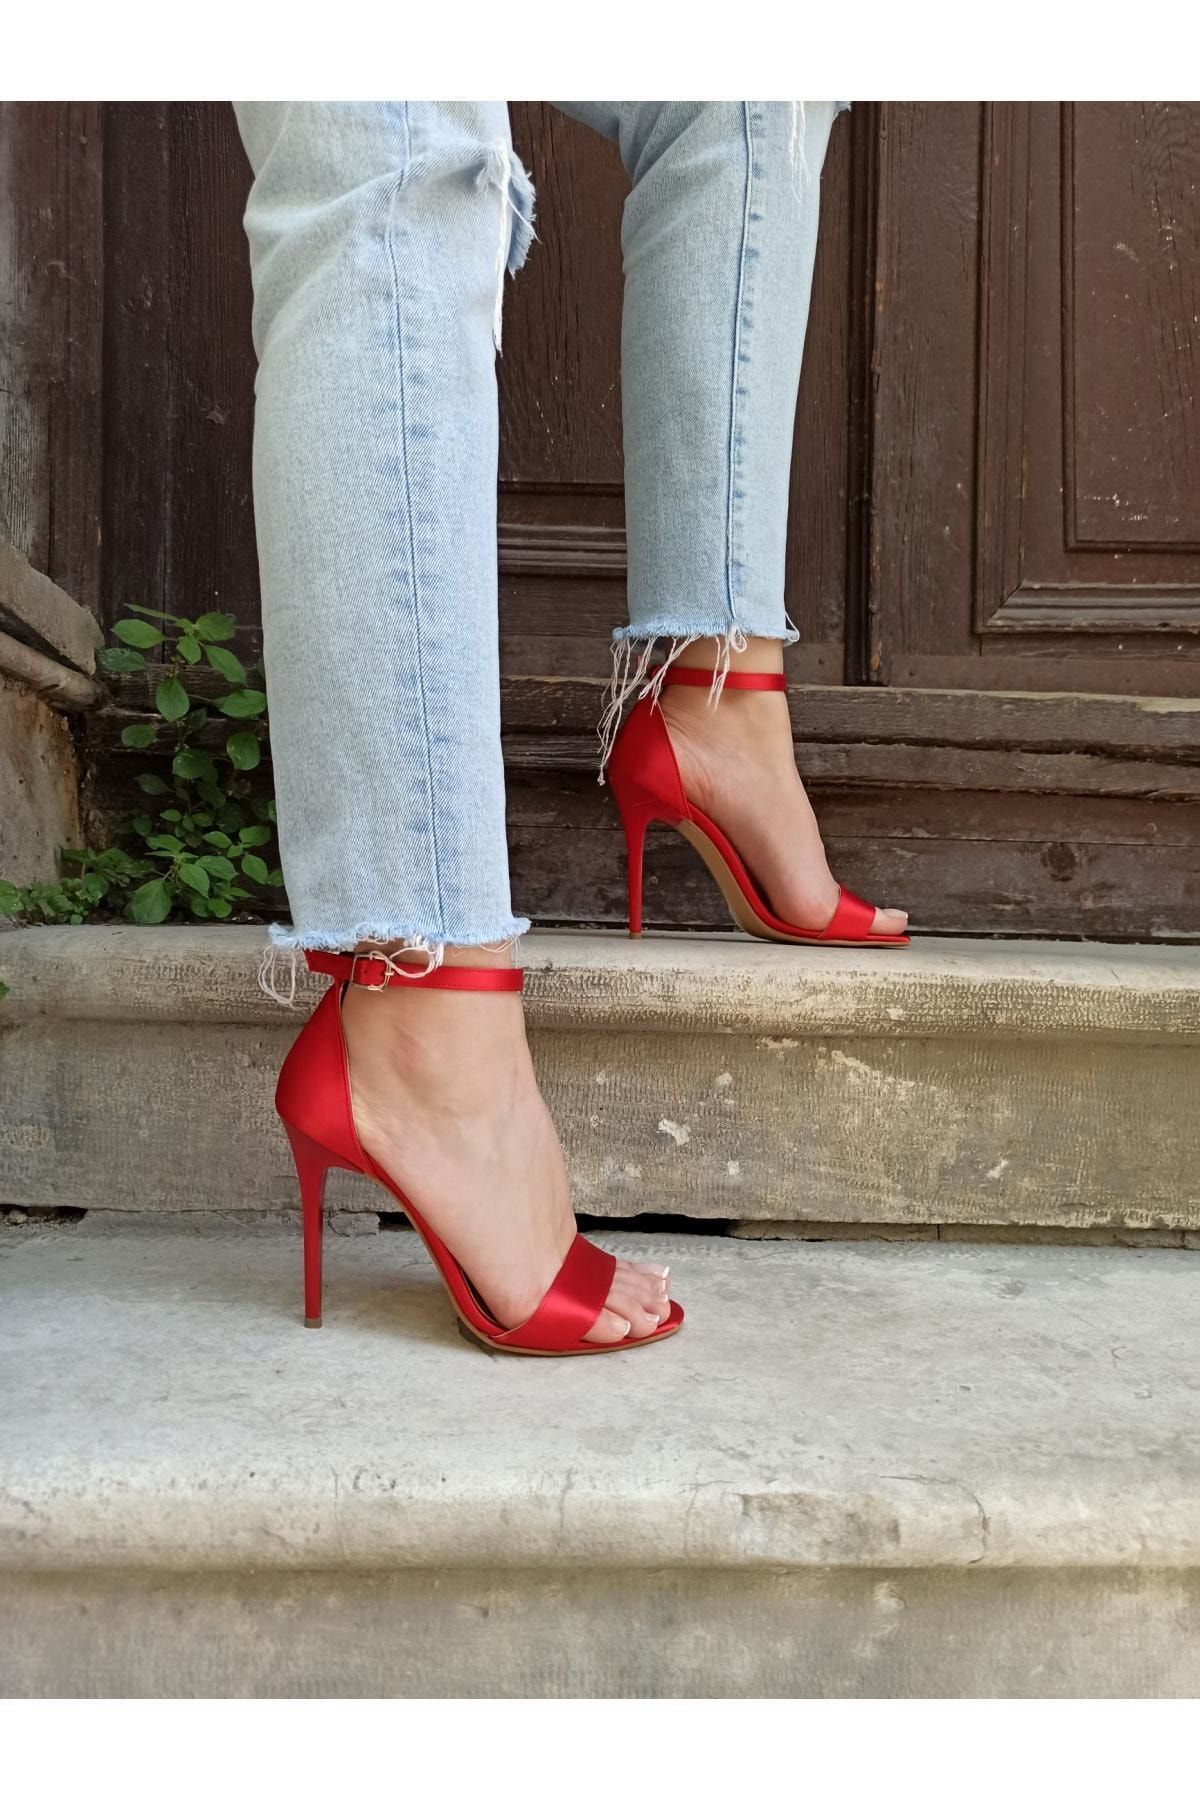 Atelierby DS Kırmızı Saten 11 Cm Topuk Tek Bant Kadın Topuklu Ayakkabı